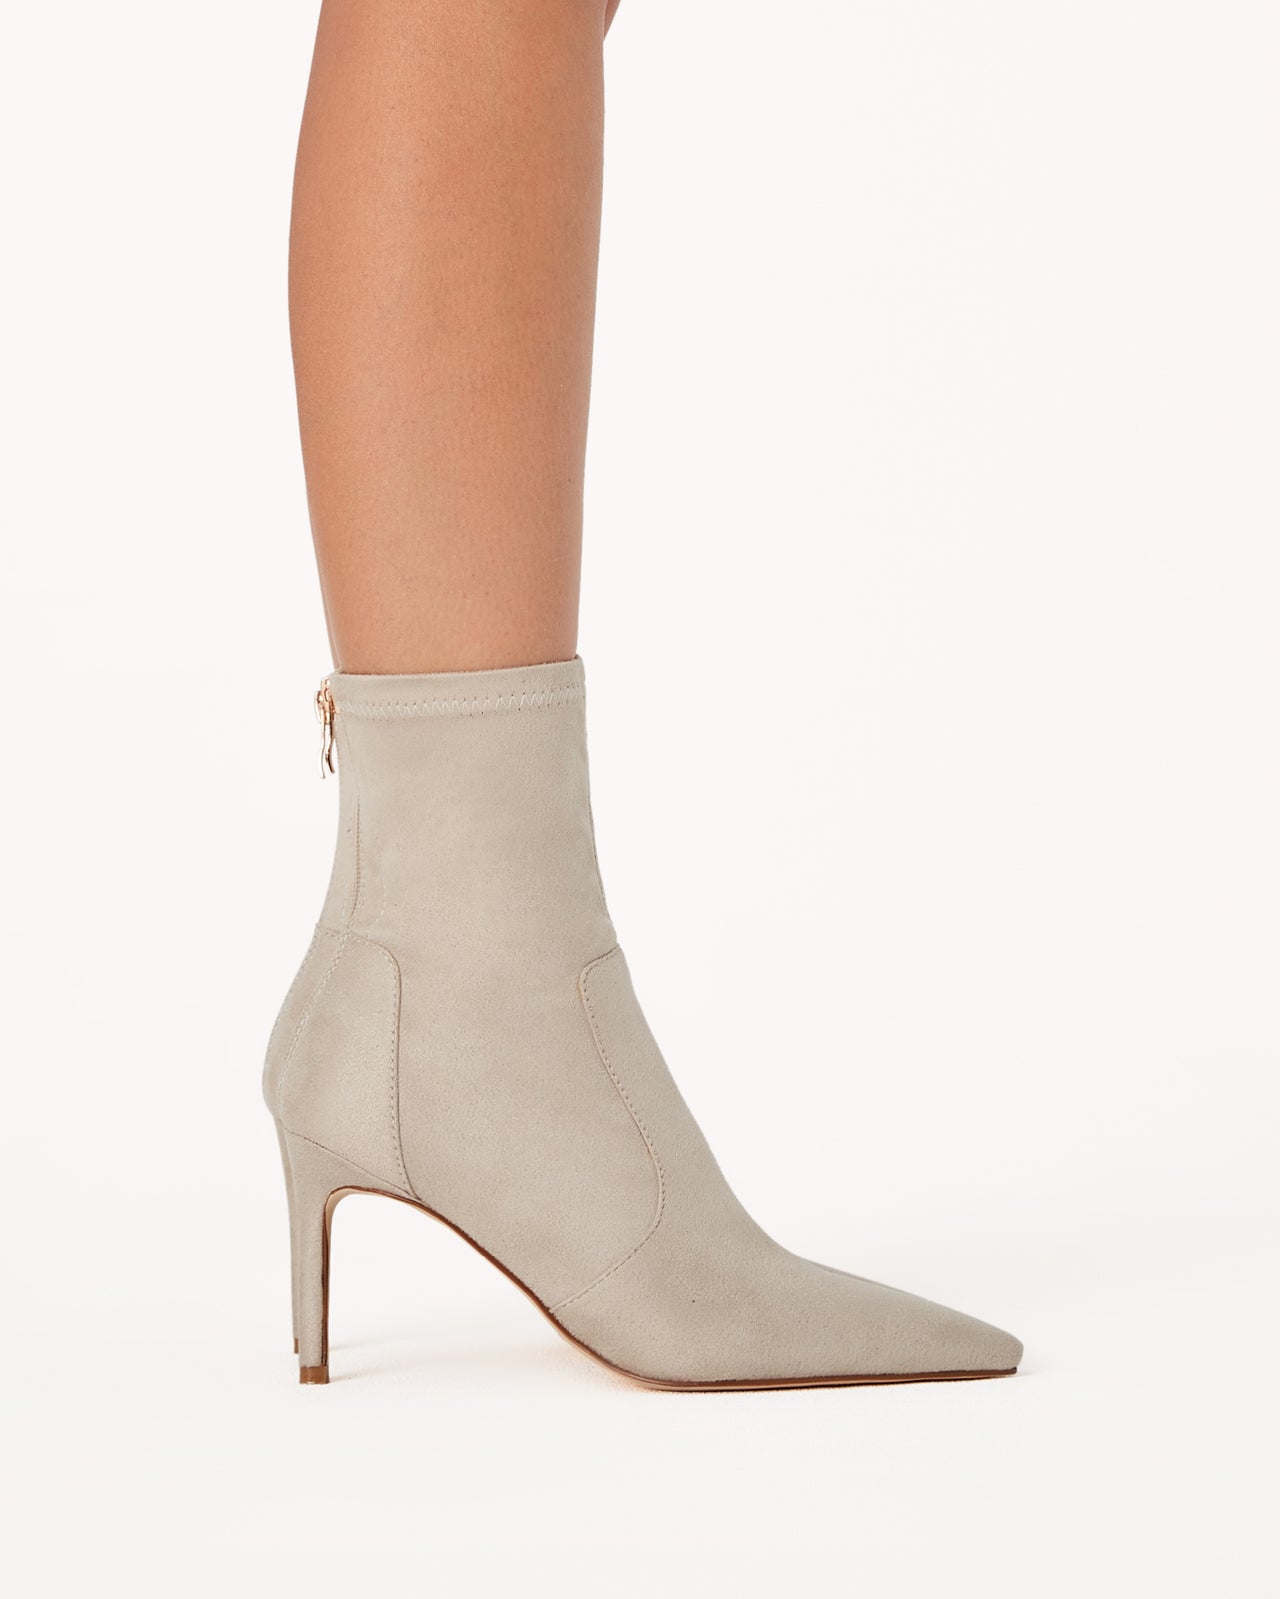 Rachel Suede Boots Cream, Boot Shoe by Billini | LIT Boutique